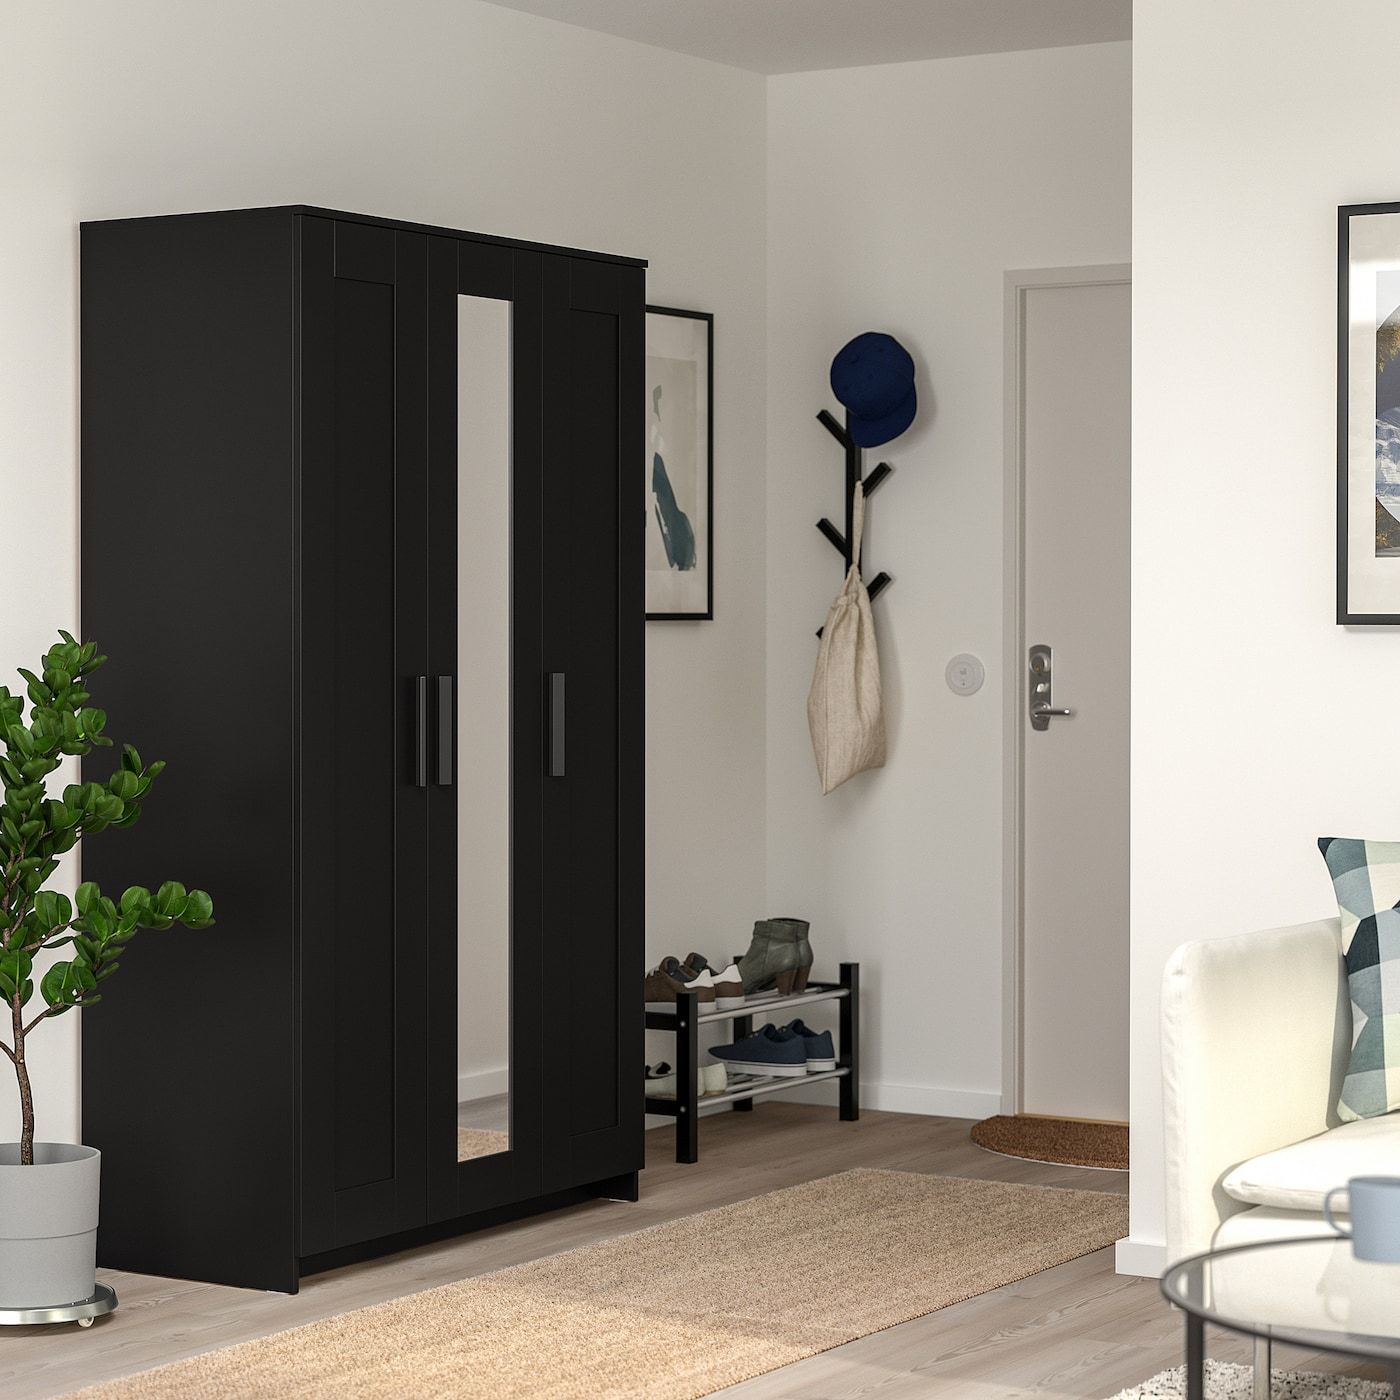 Brimnes Wardrobe With 3 Doors, Black, 46x743/4" – Ikea Throughout 3 Door Black Wardrobes (View 2 of 15)